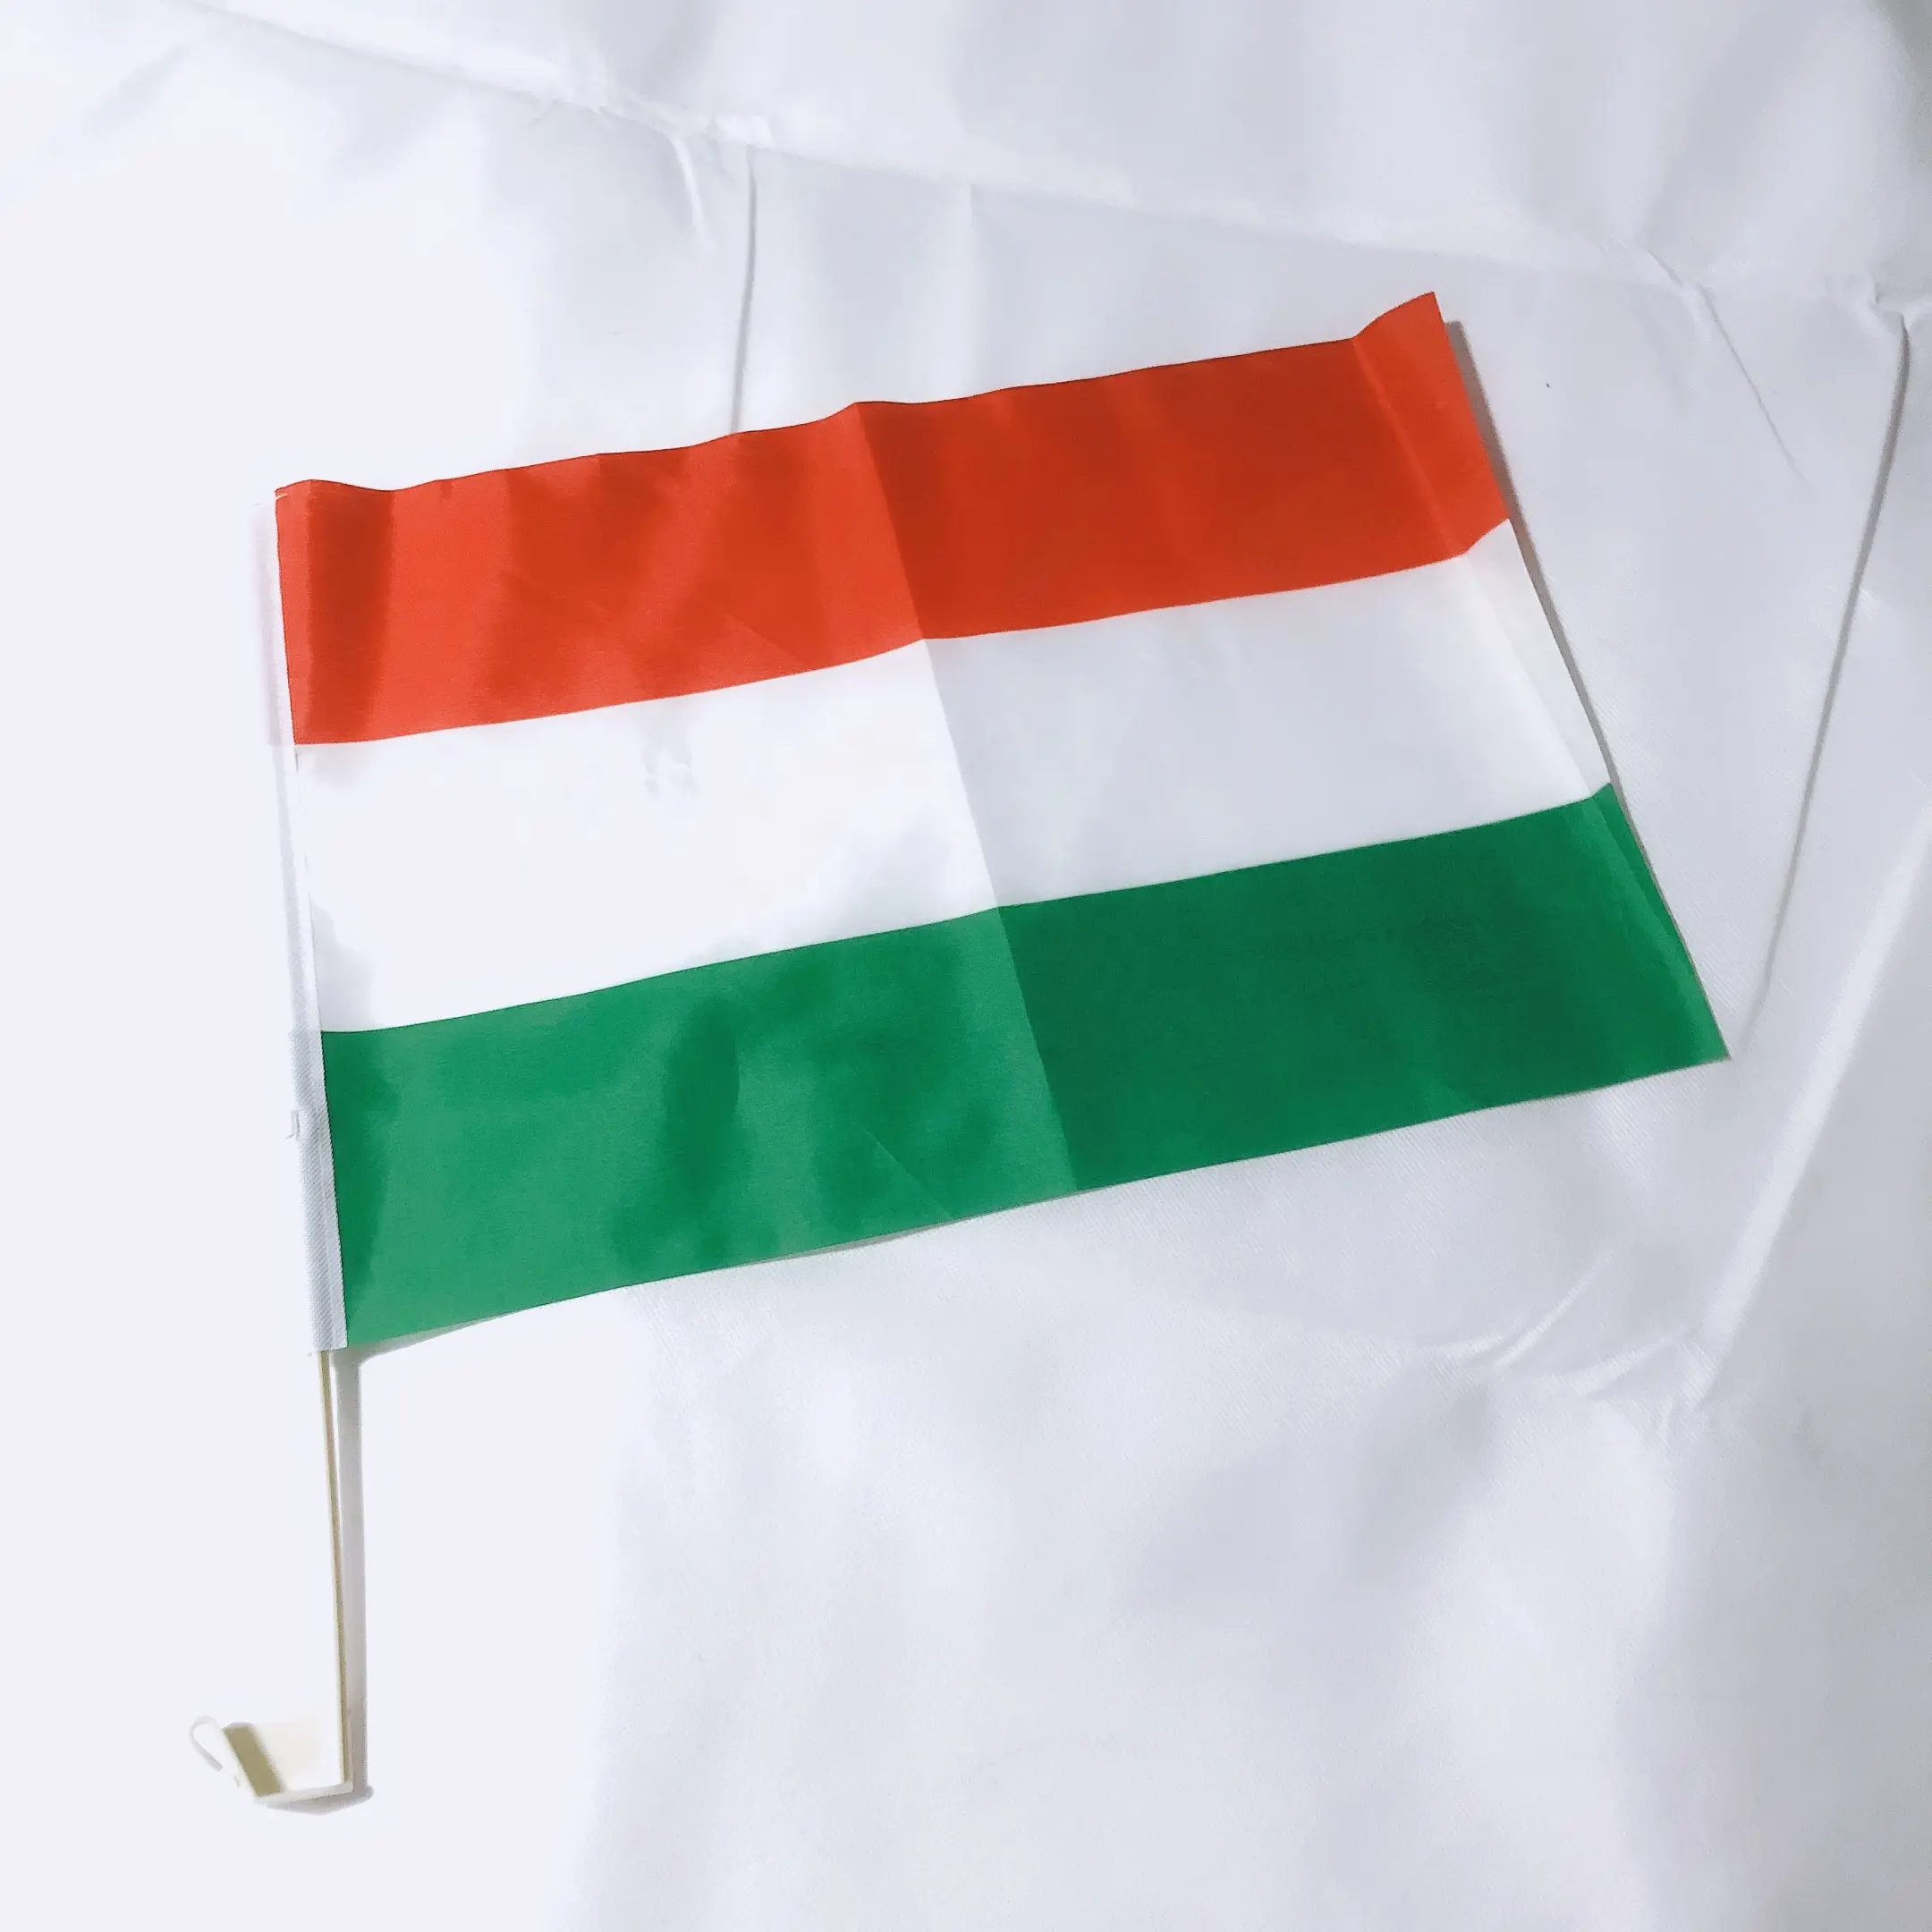 गुआंगज़ौ फैक्टरी थोक कस्टम हंगरी कार की खिड़की झंडा पोल हुक कार की खिड़की झंडा धारक हंगरी कार झंडा